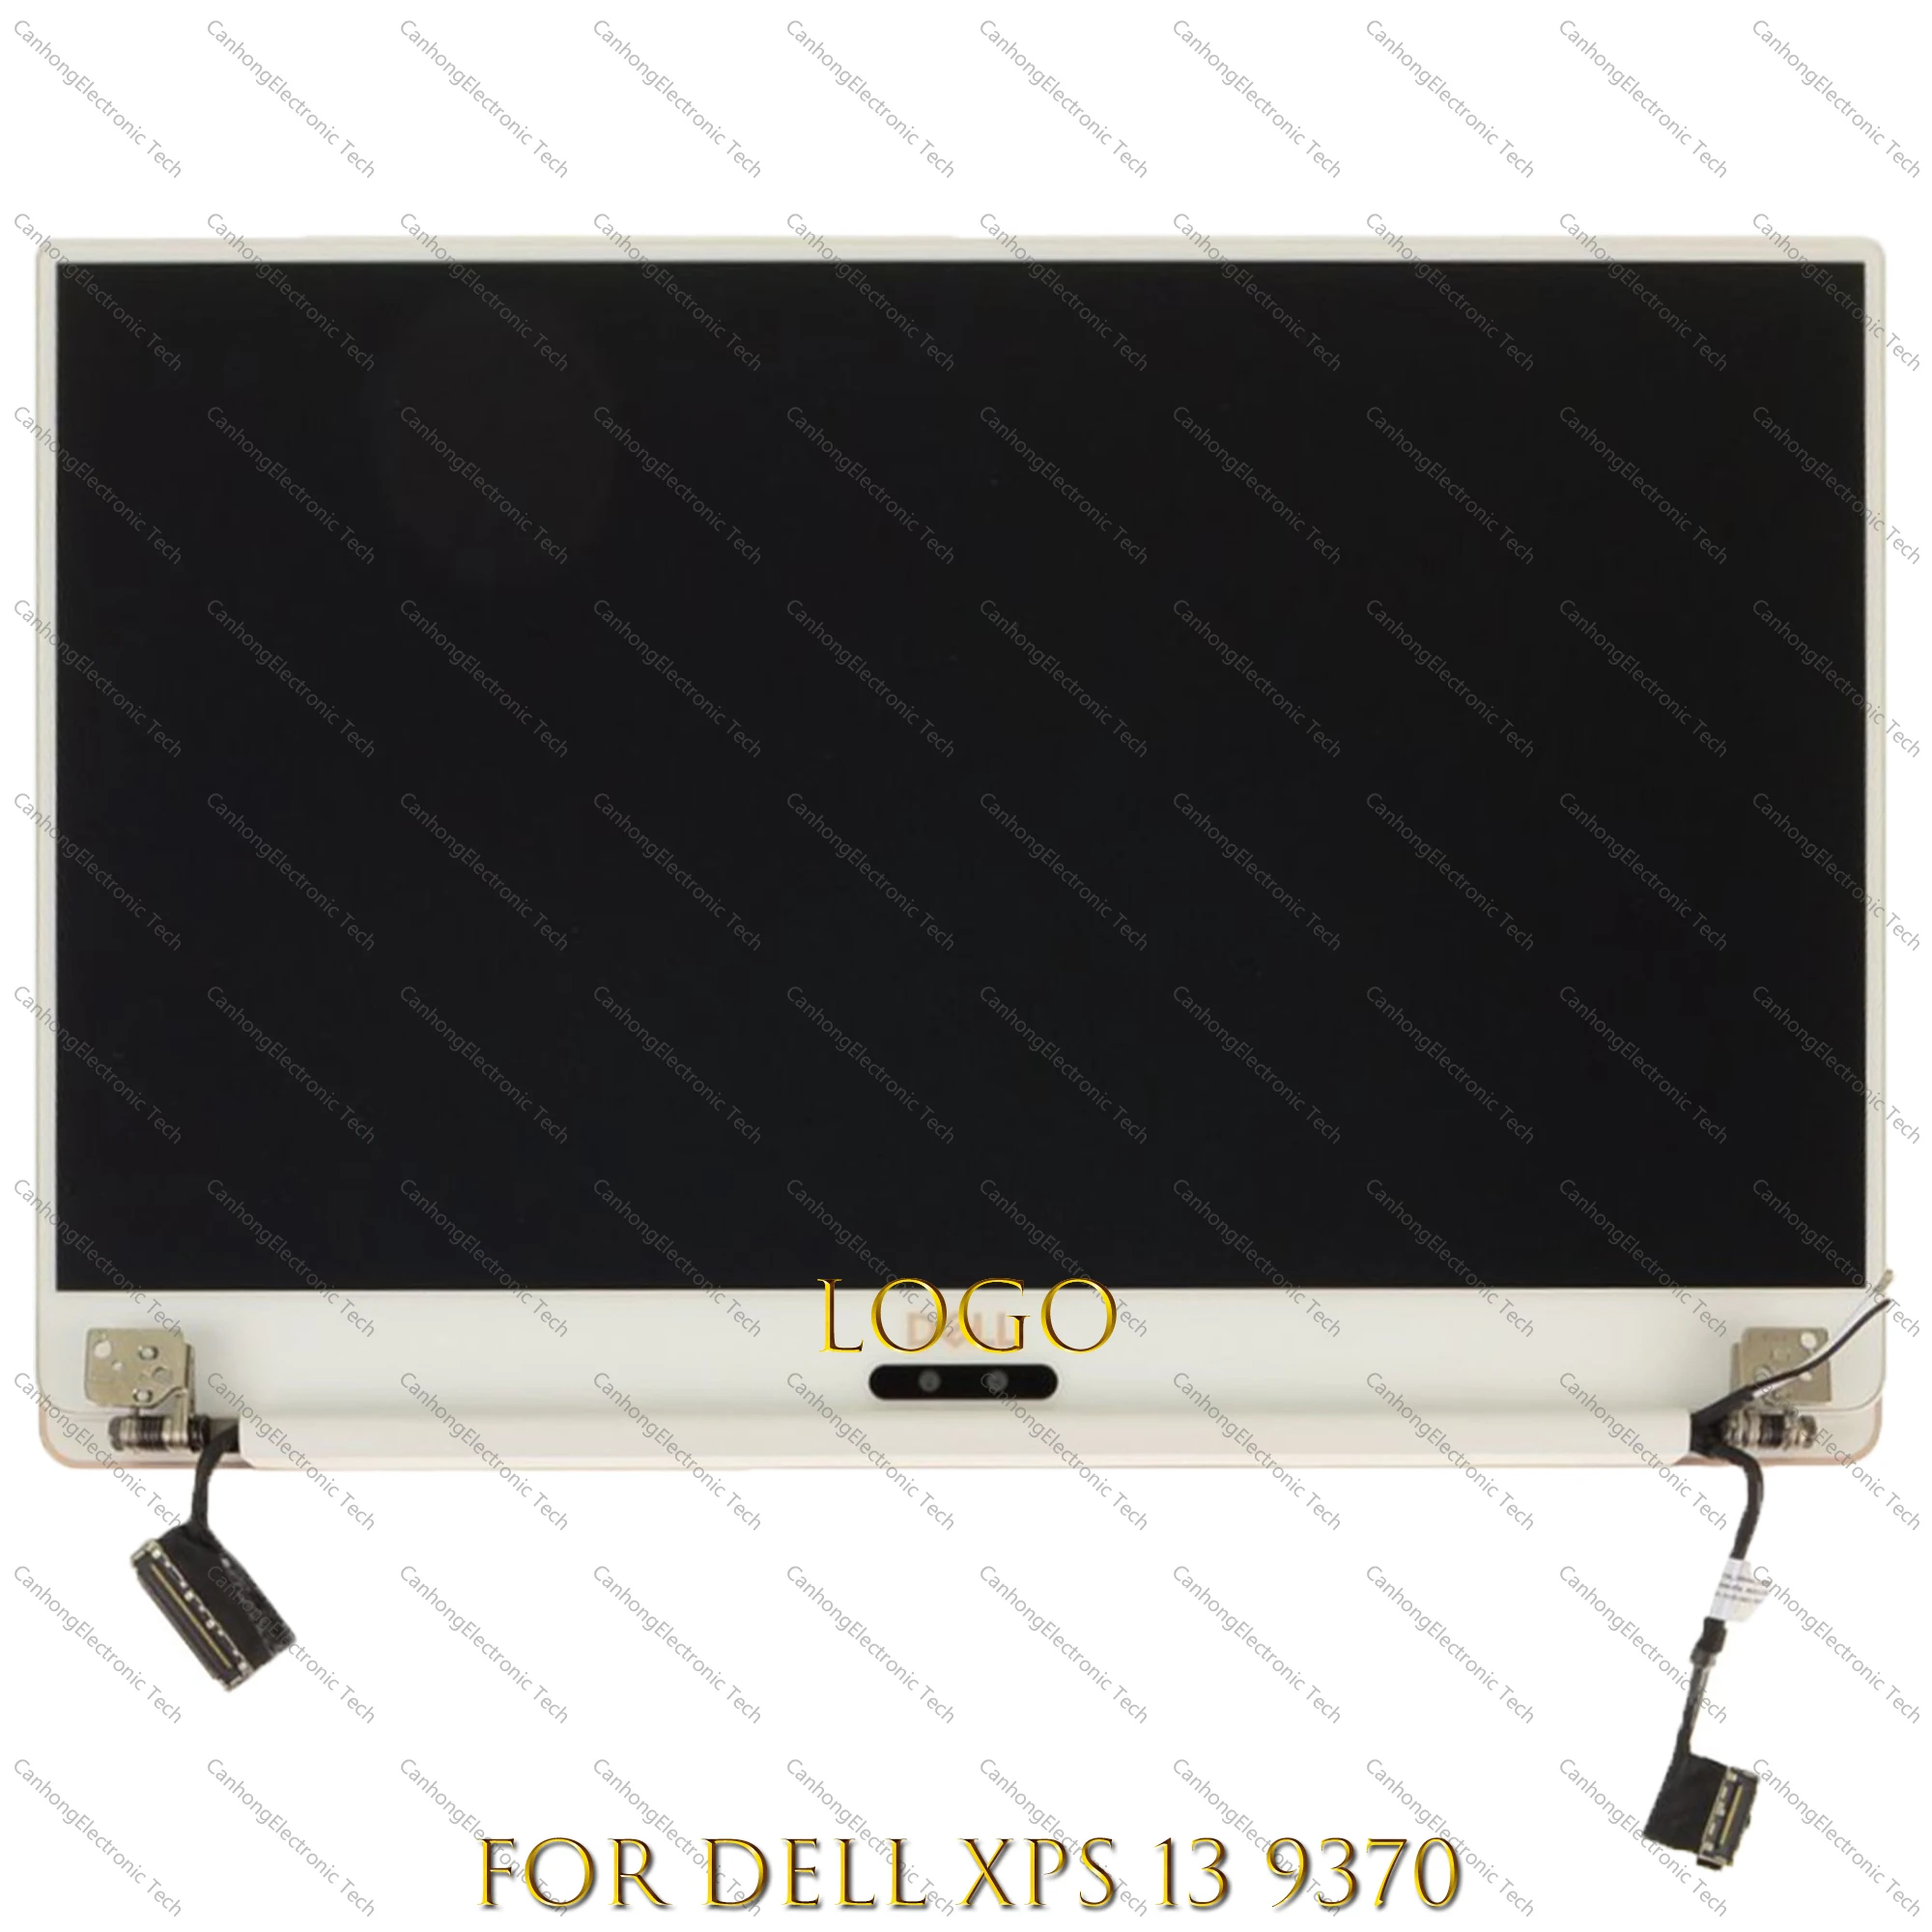 

Сенсорный ЖК-экран в сборе для Dell XPS 13 9370 p82g p82g002, Дисплей 1920*1080 FHD 3840*2160 UHD, серебристый, золотой, полностью протестированный